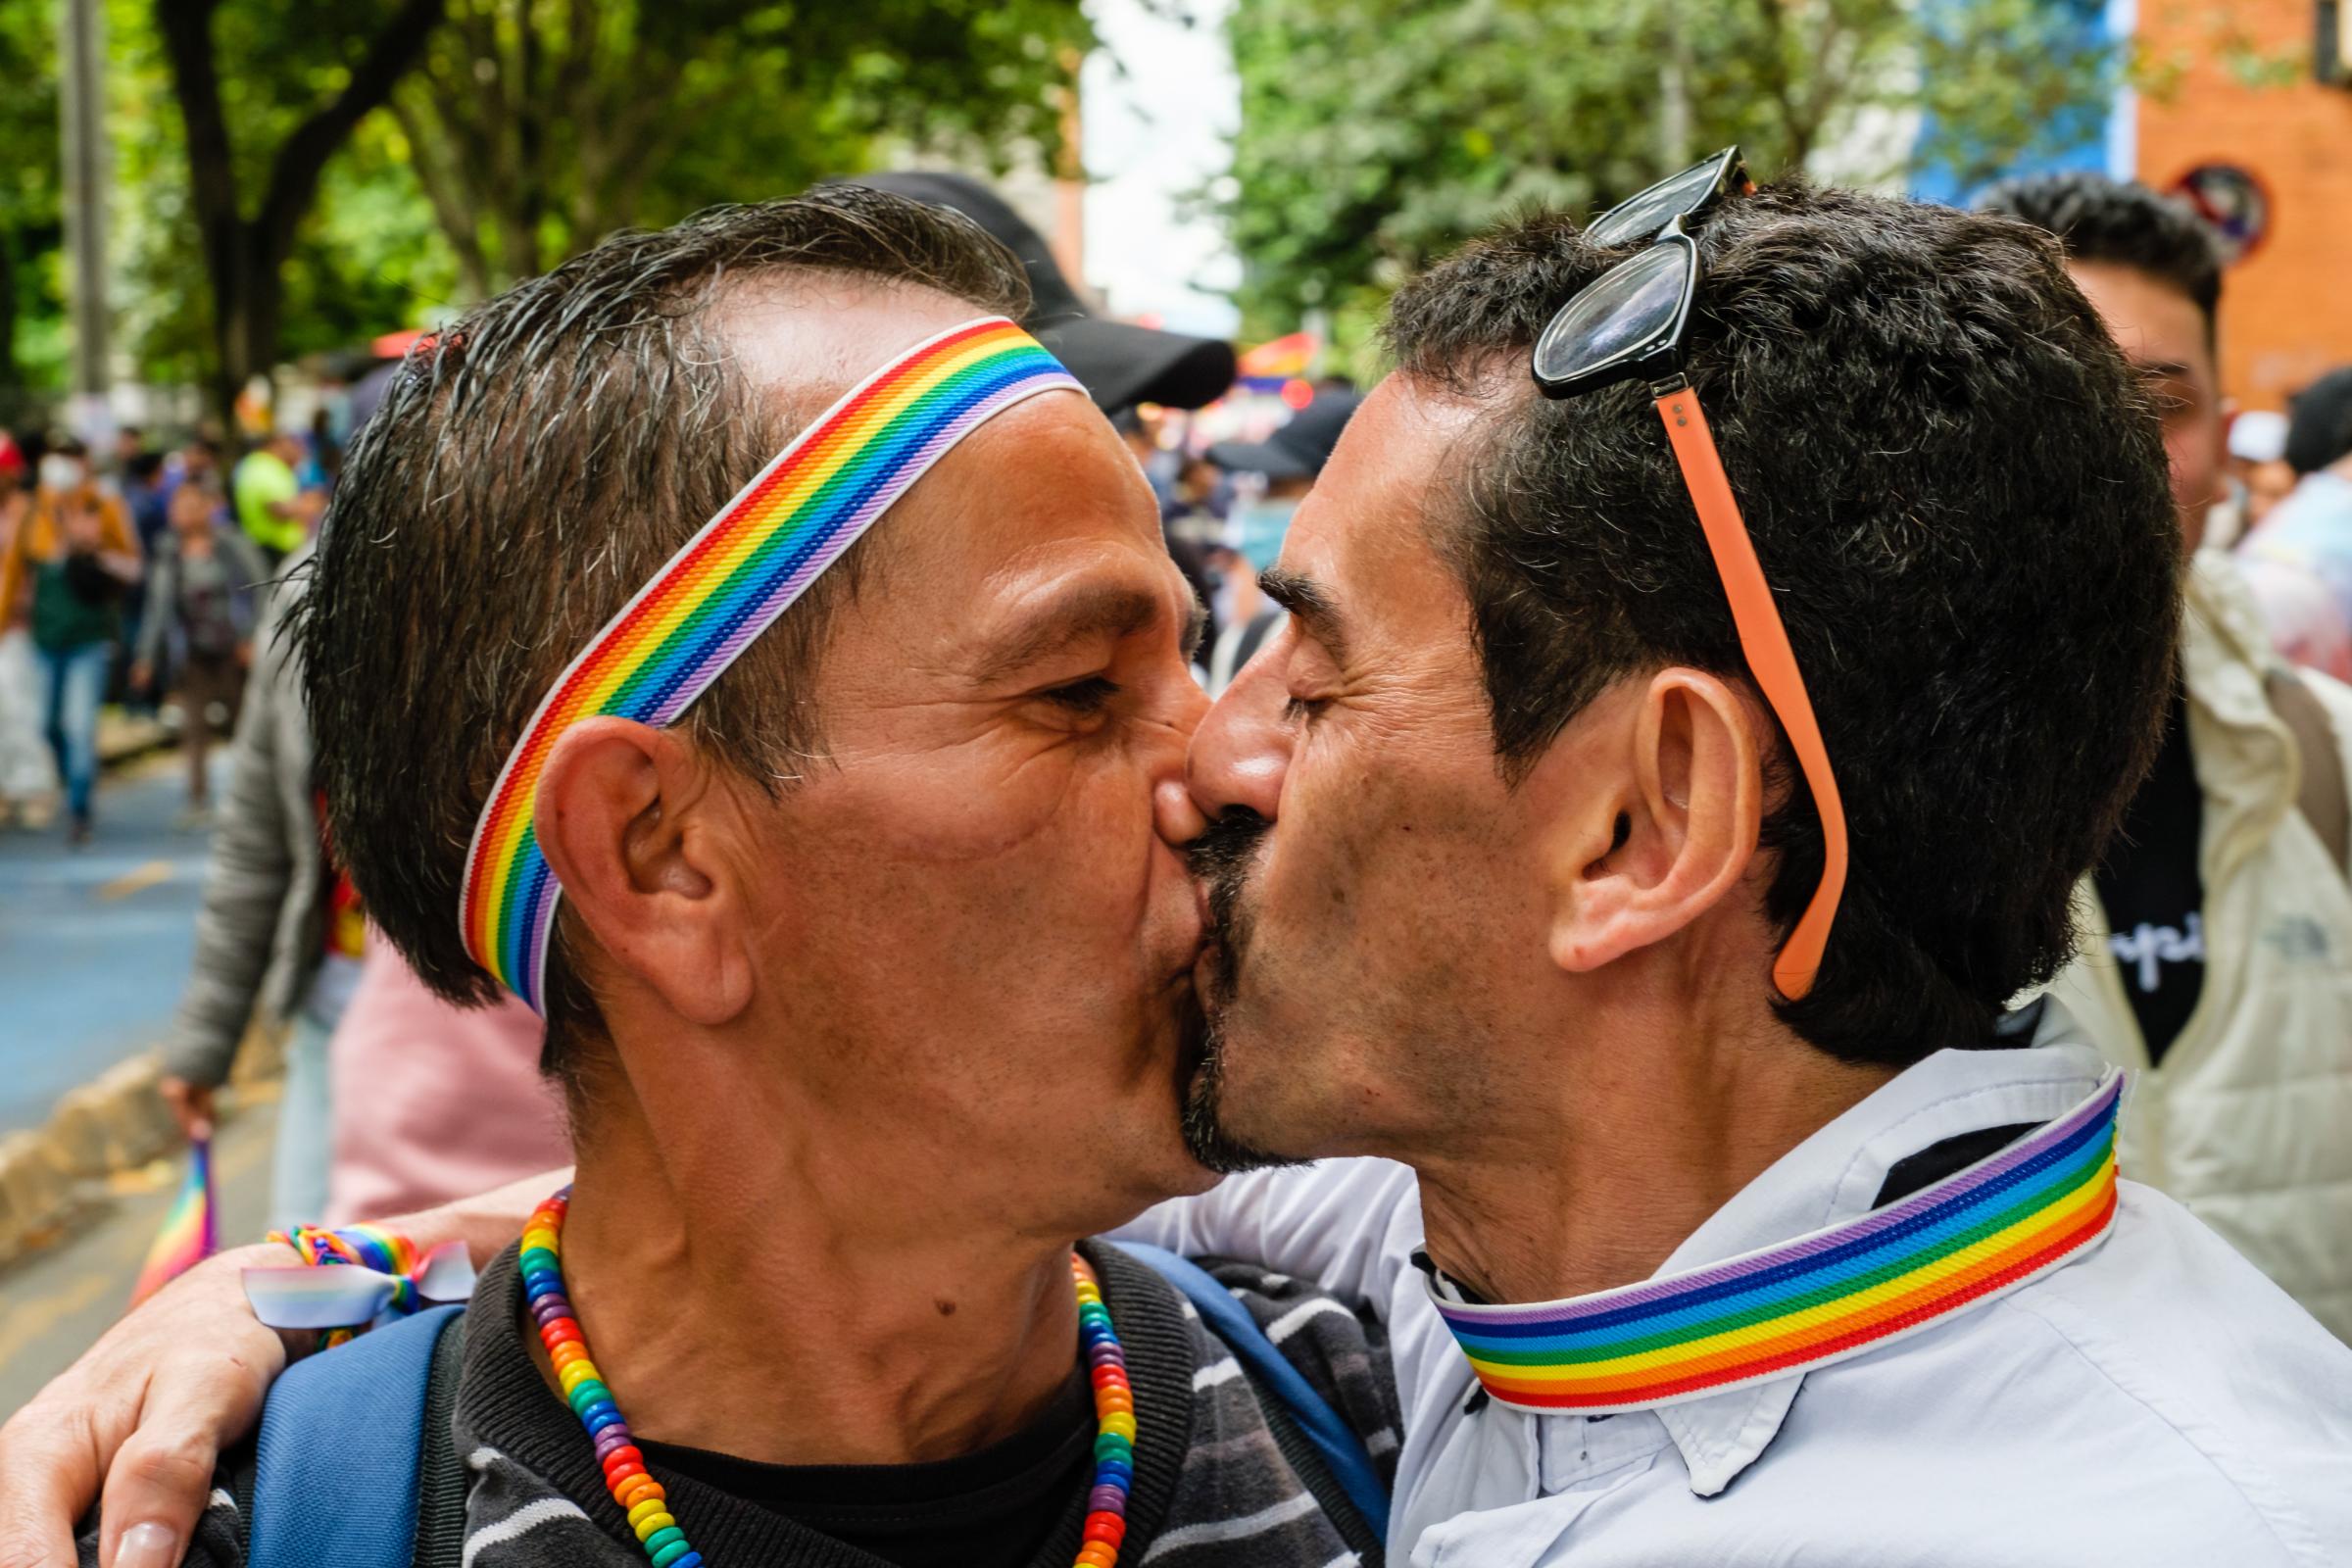 Orgullo 2022 Bogota - Marcha del Orgullo LGBTIQ+ 2022. Bogota, Colombia. PEDRO...